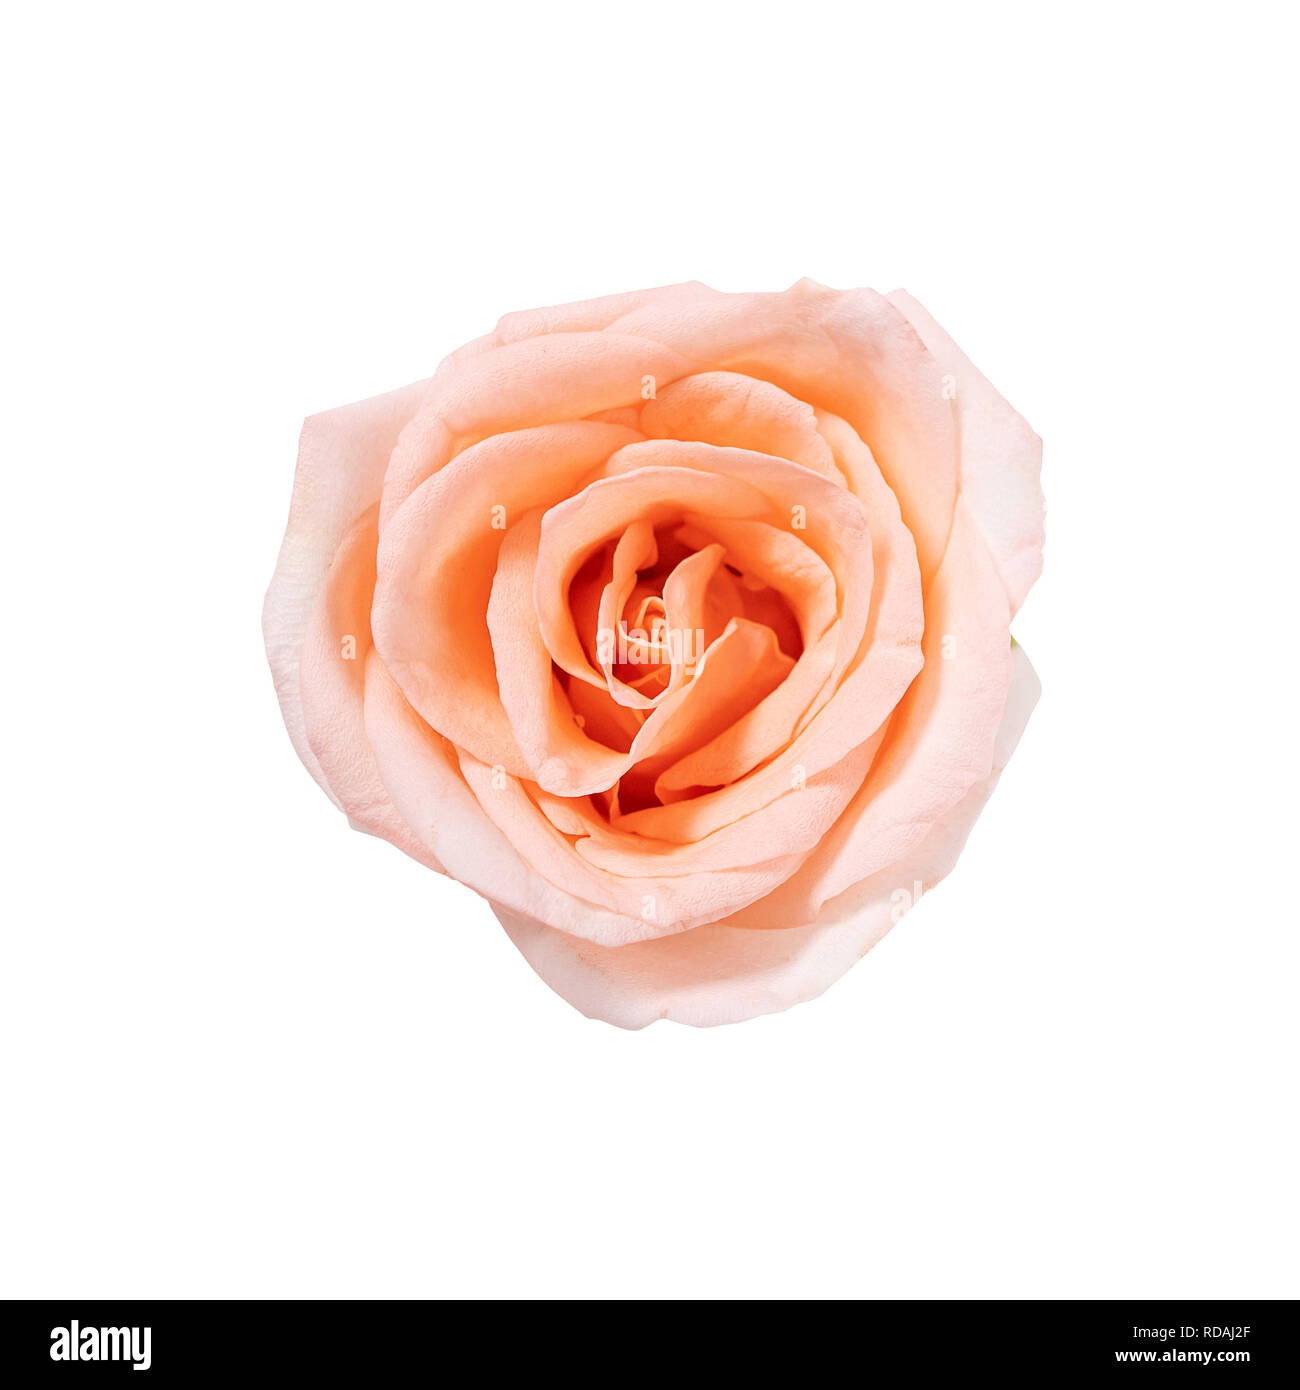 Vue de dessus du seul rose rose fleur qui s'épanouit isolé sur fond blanc avec clipping path Banque D'Images